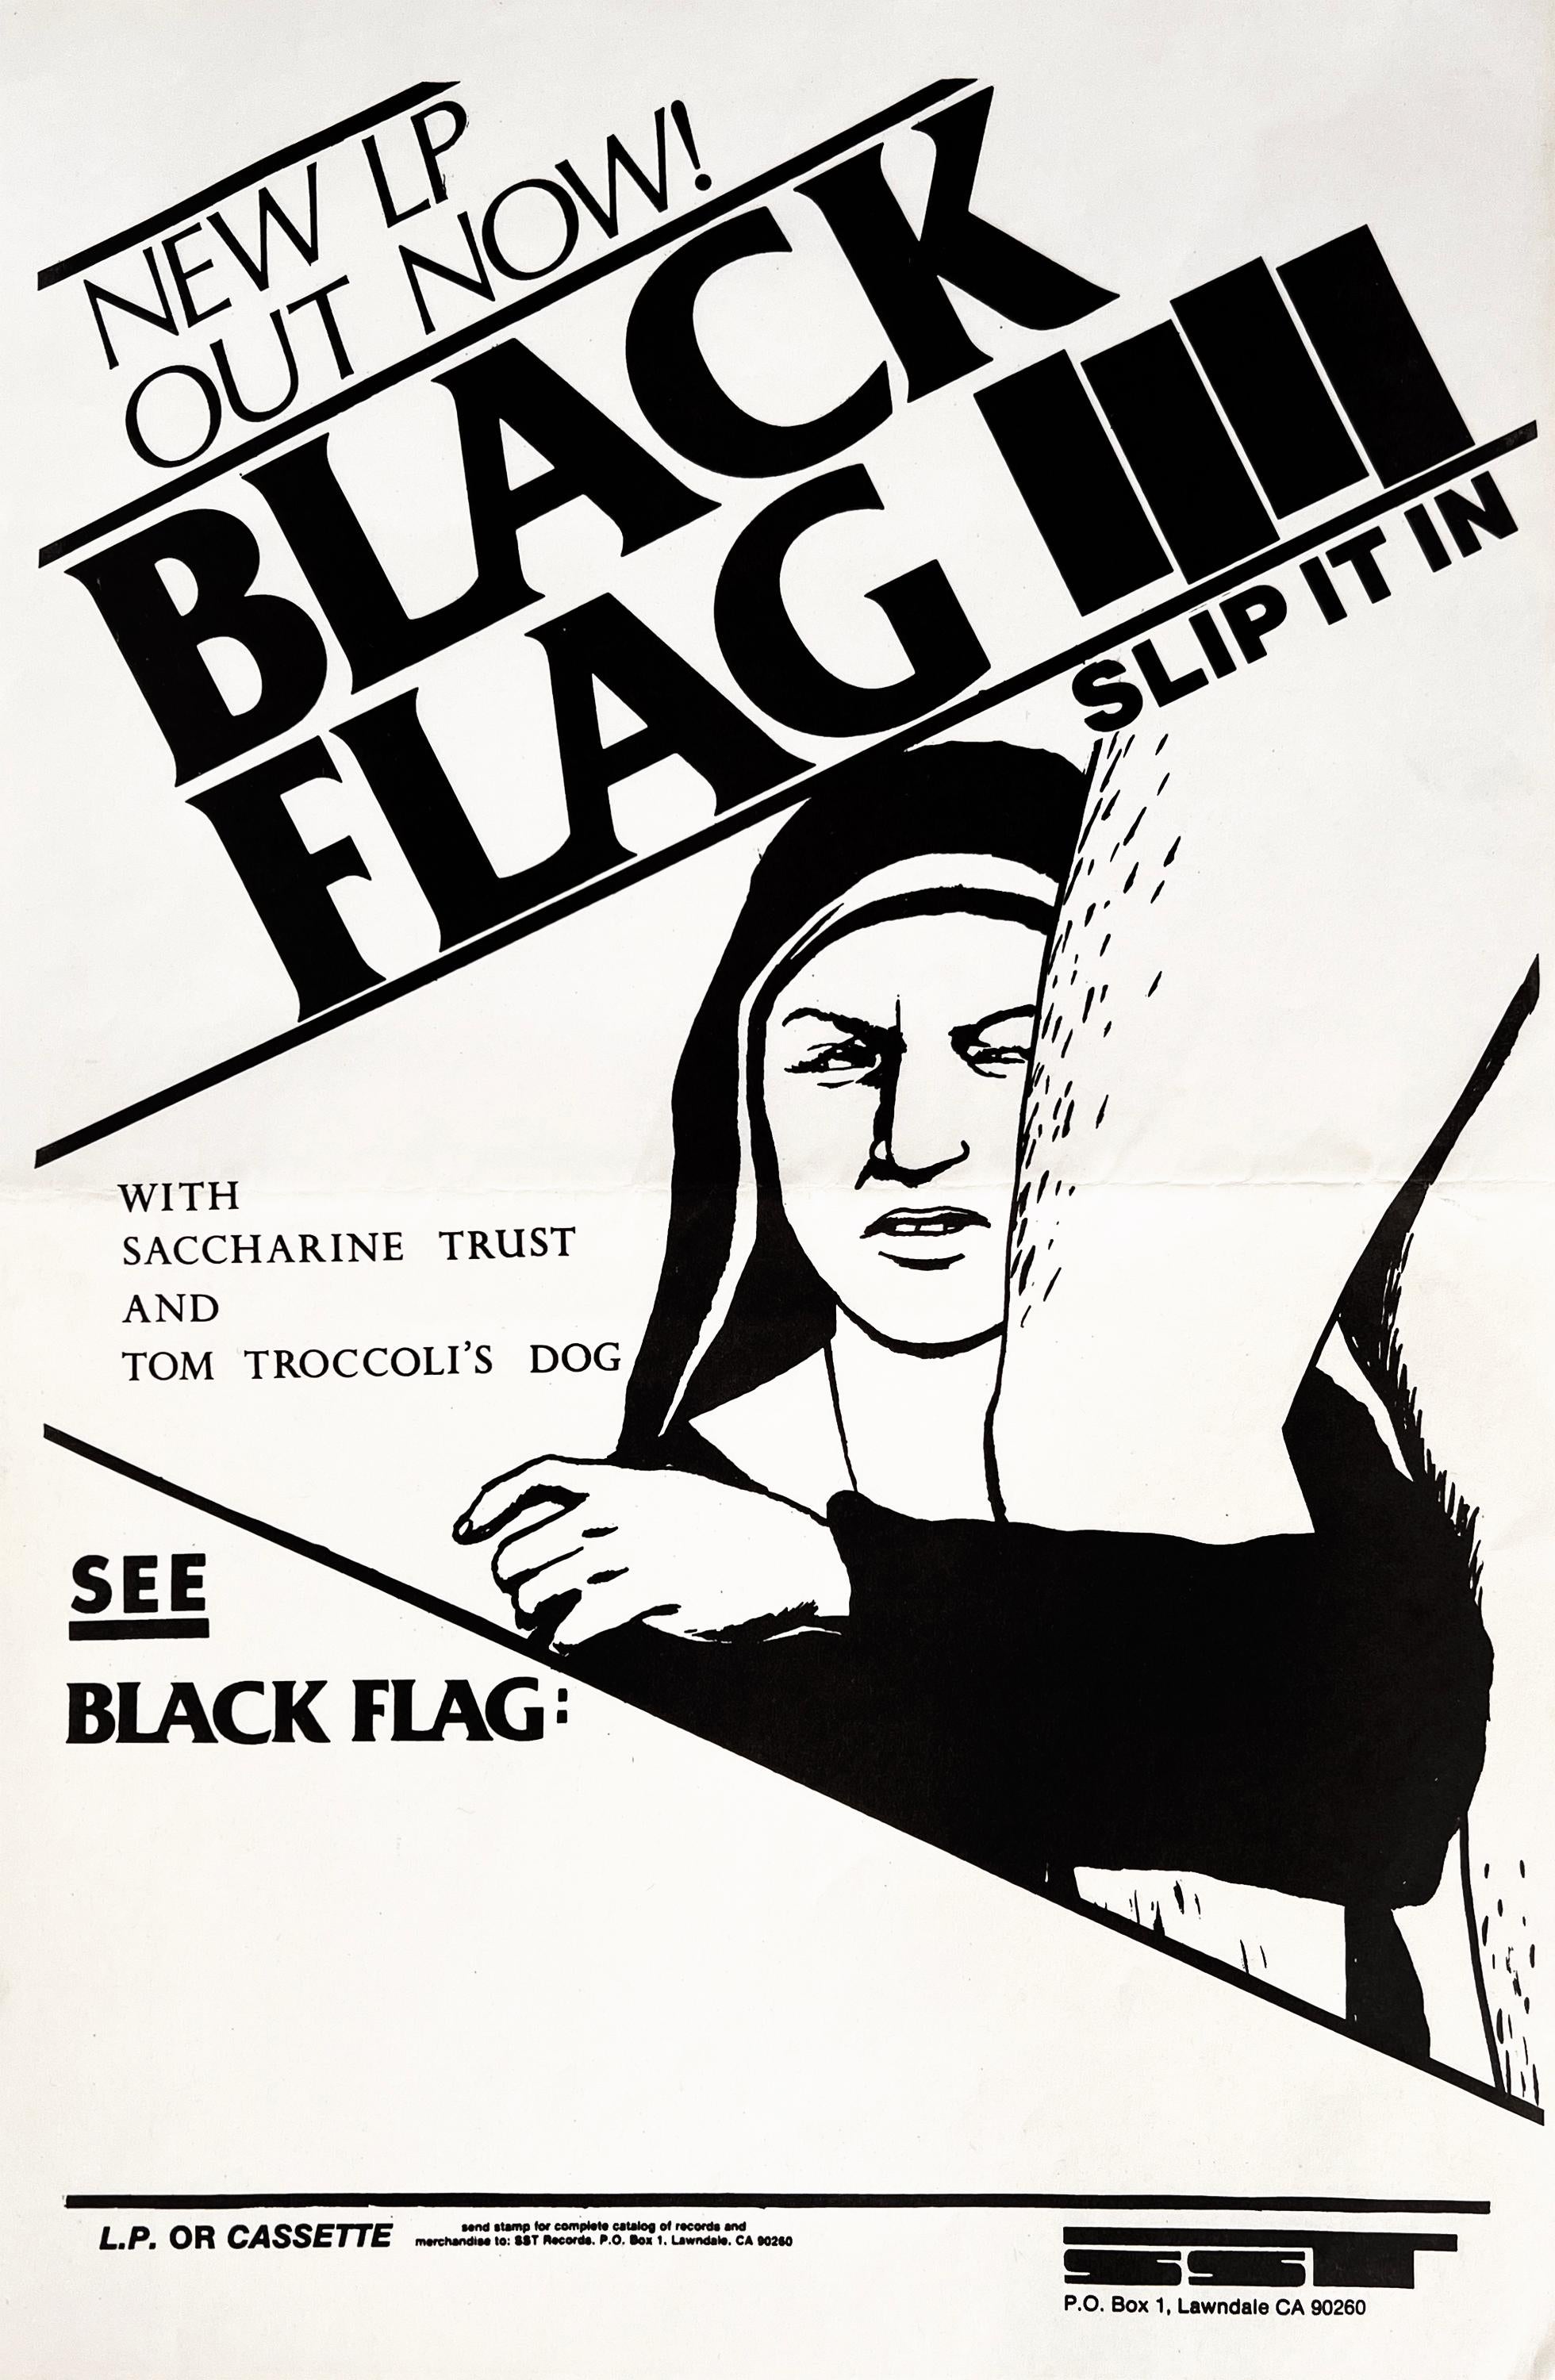 Raymond Pettibon Bandiera nera:
Raro volantino promozionale dei Black Flag illustrato da Raymond Pettibon del 1984, pubblicato per pubblicizzare l'uscita dell'album dei Black Flag "Slip It In".

Stampa offset; 17 x 11 pollici. 1984.
Condizioni: